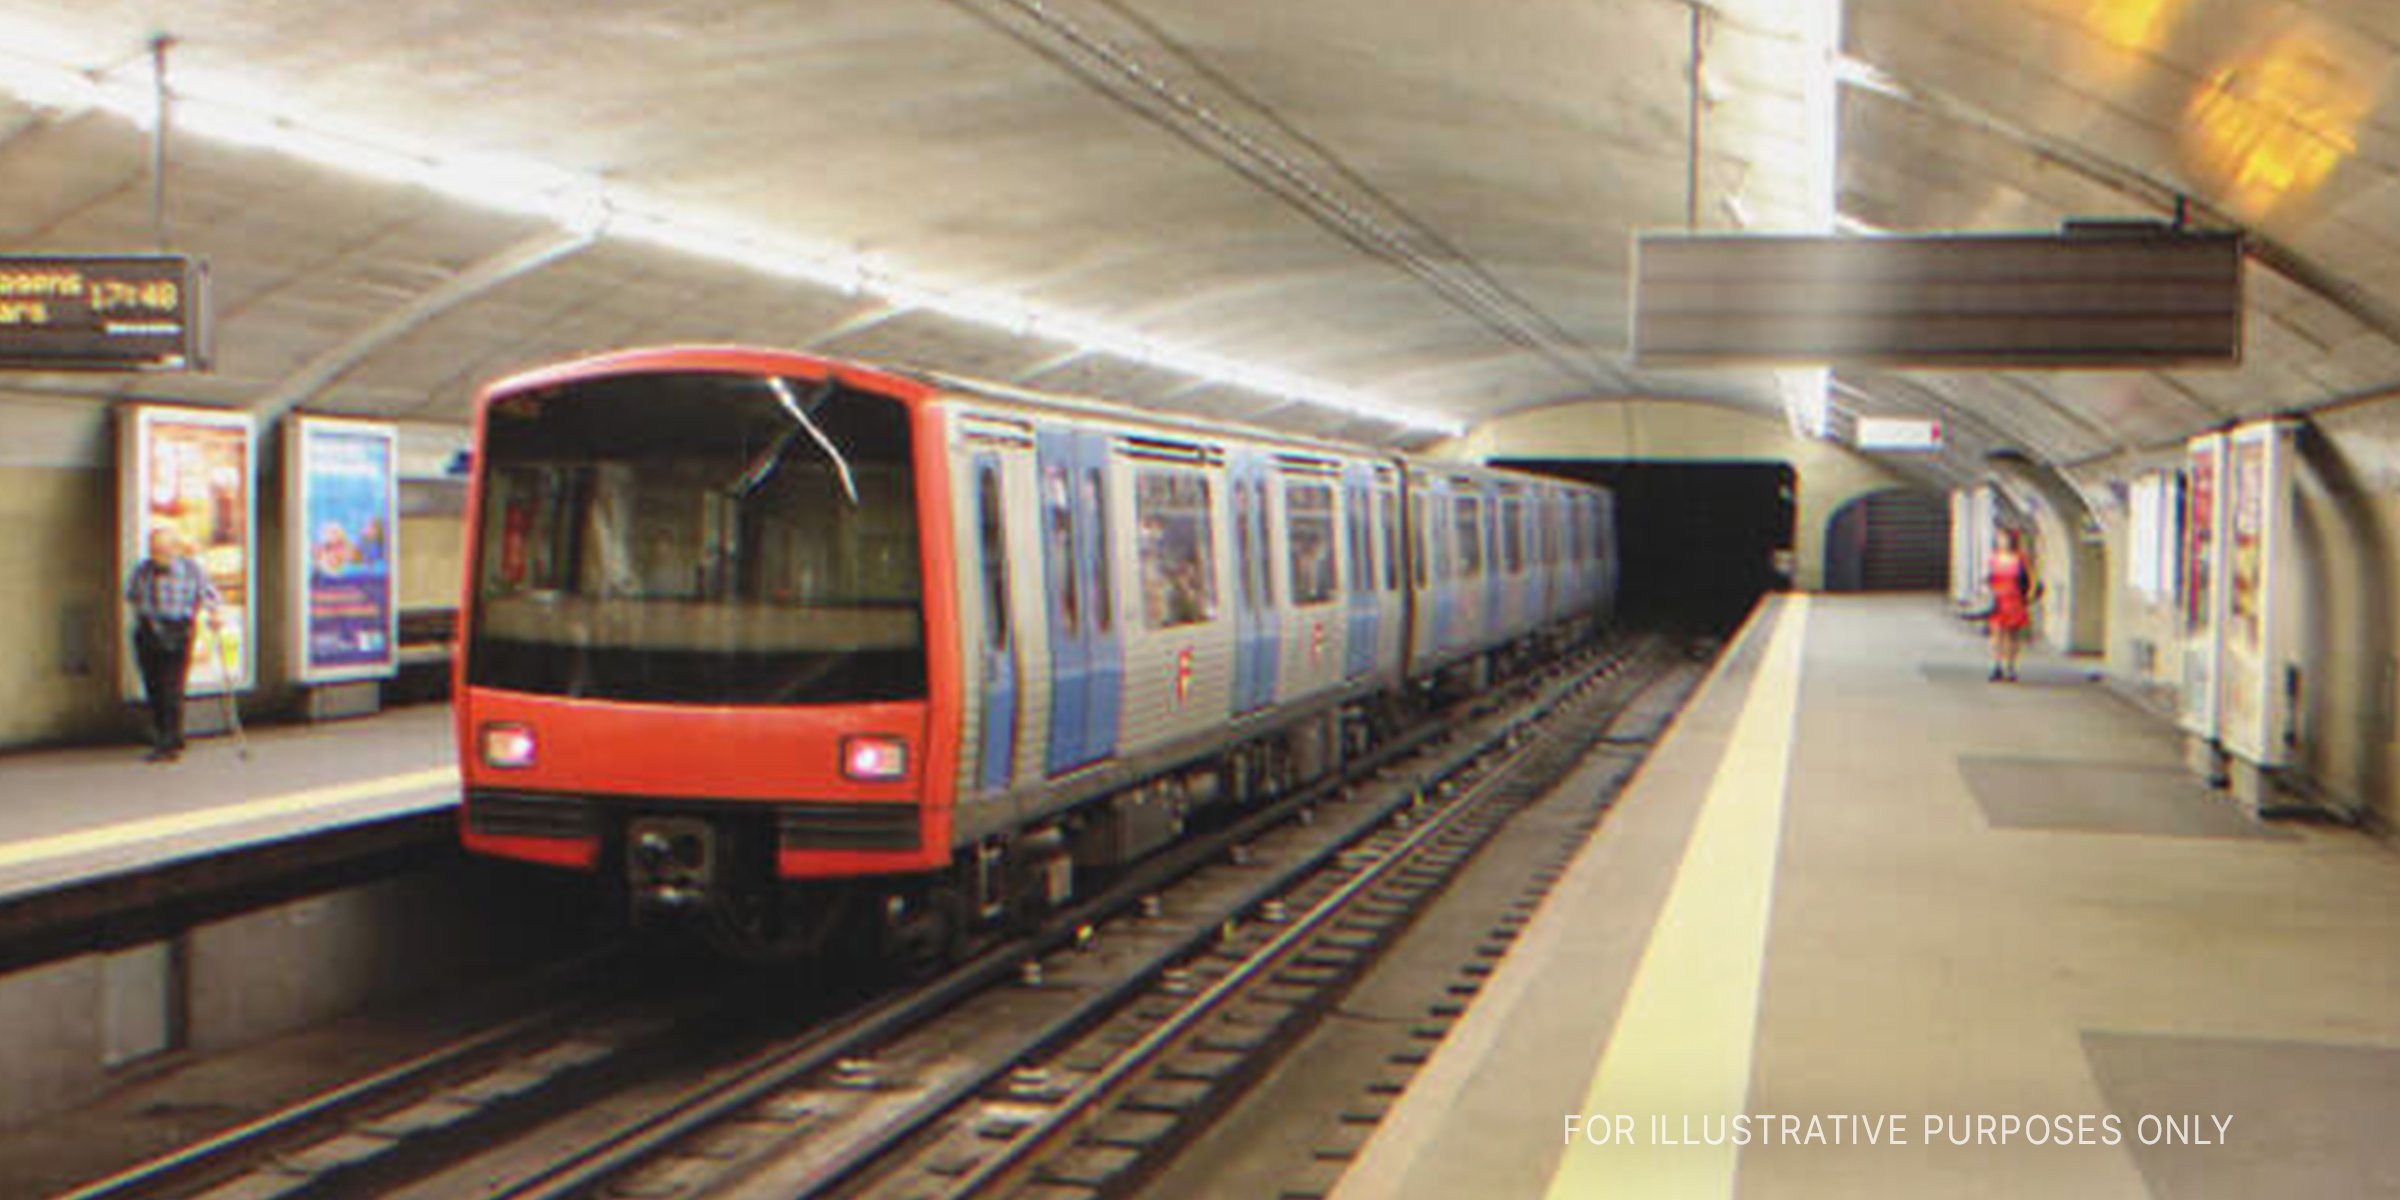 Ein U-Bahn-Zug wird im Bahnhof angehalten. | Quelle: Shutterstock